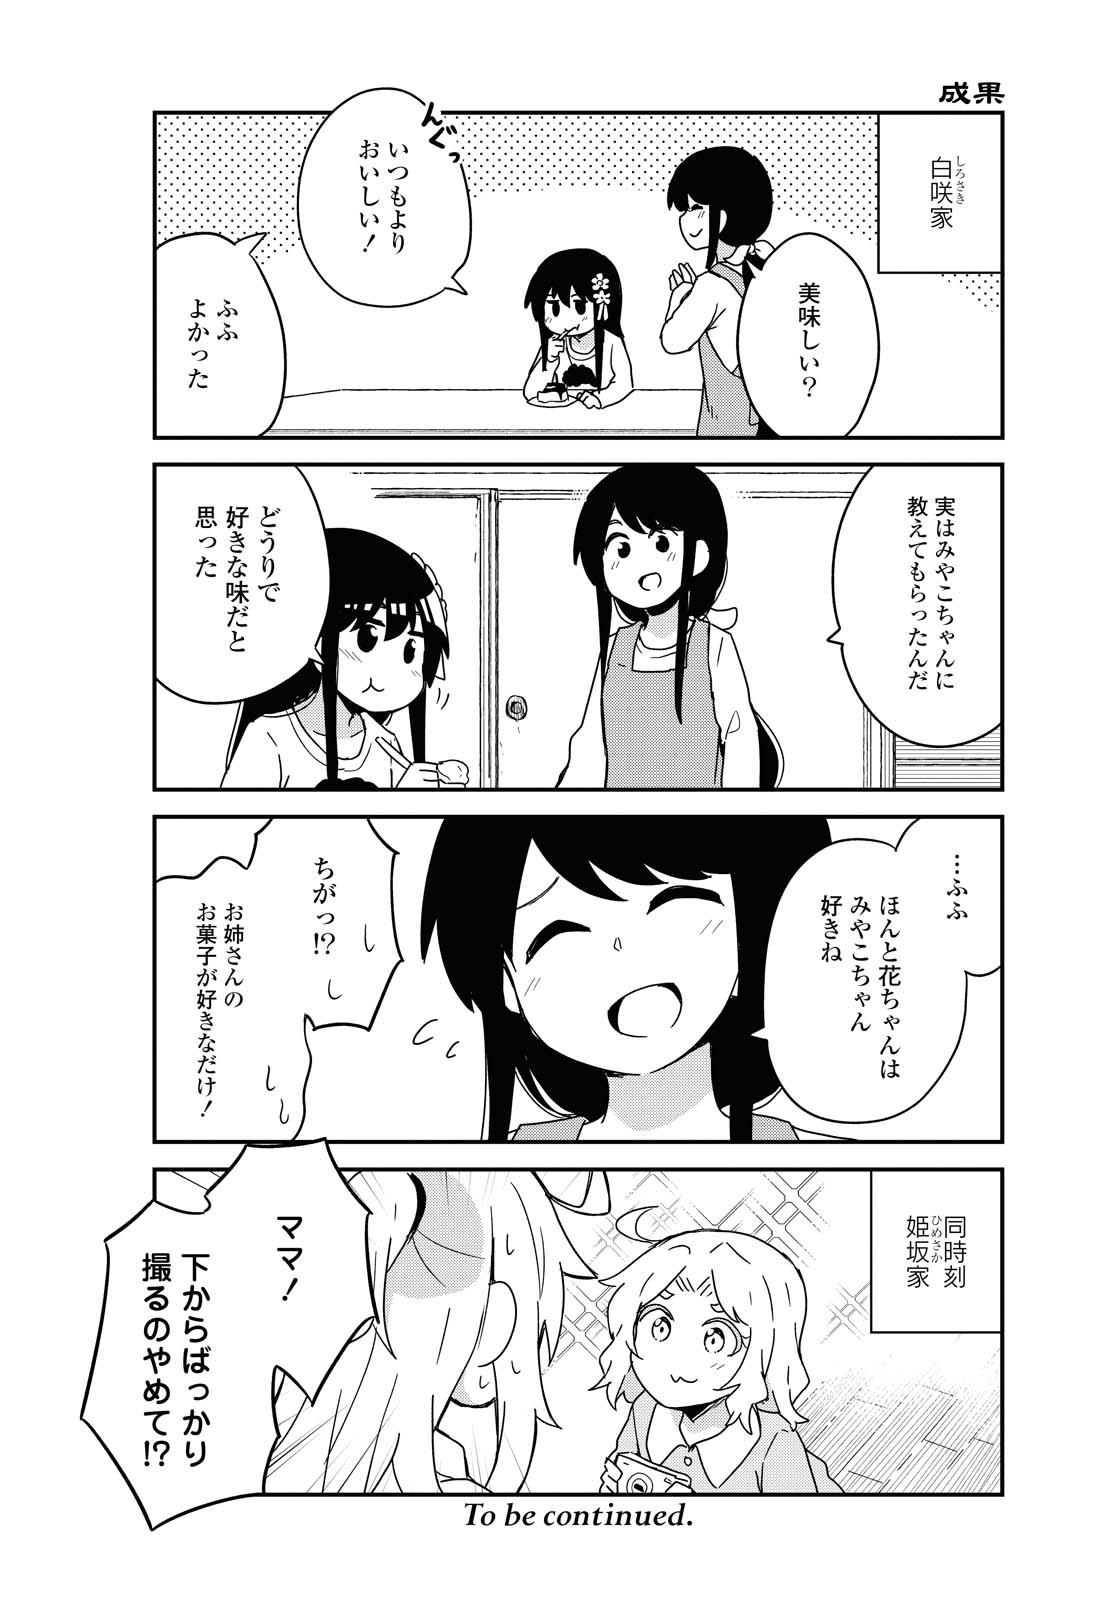 Watashi ni Tenshi ga Maiorita! - Chapter 75 - Page 10